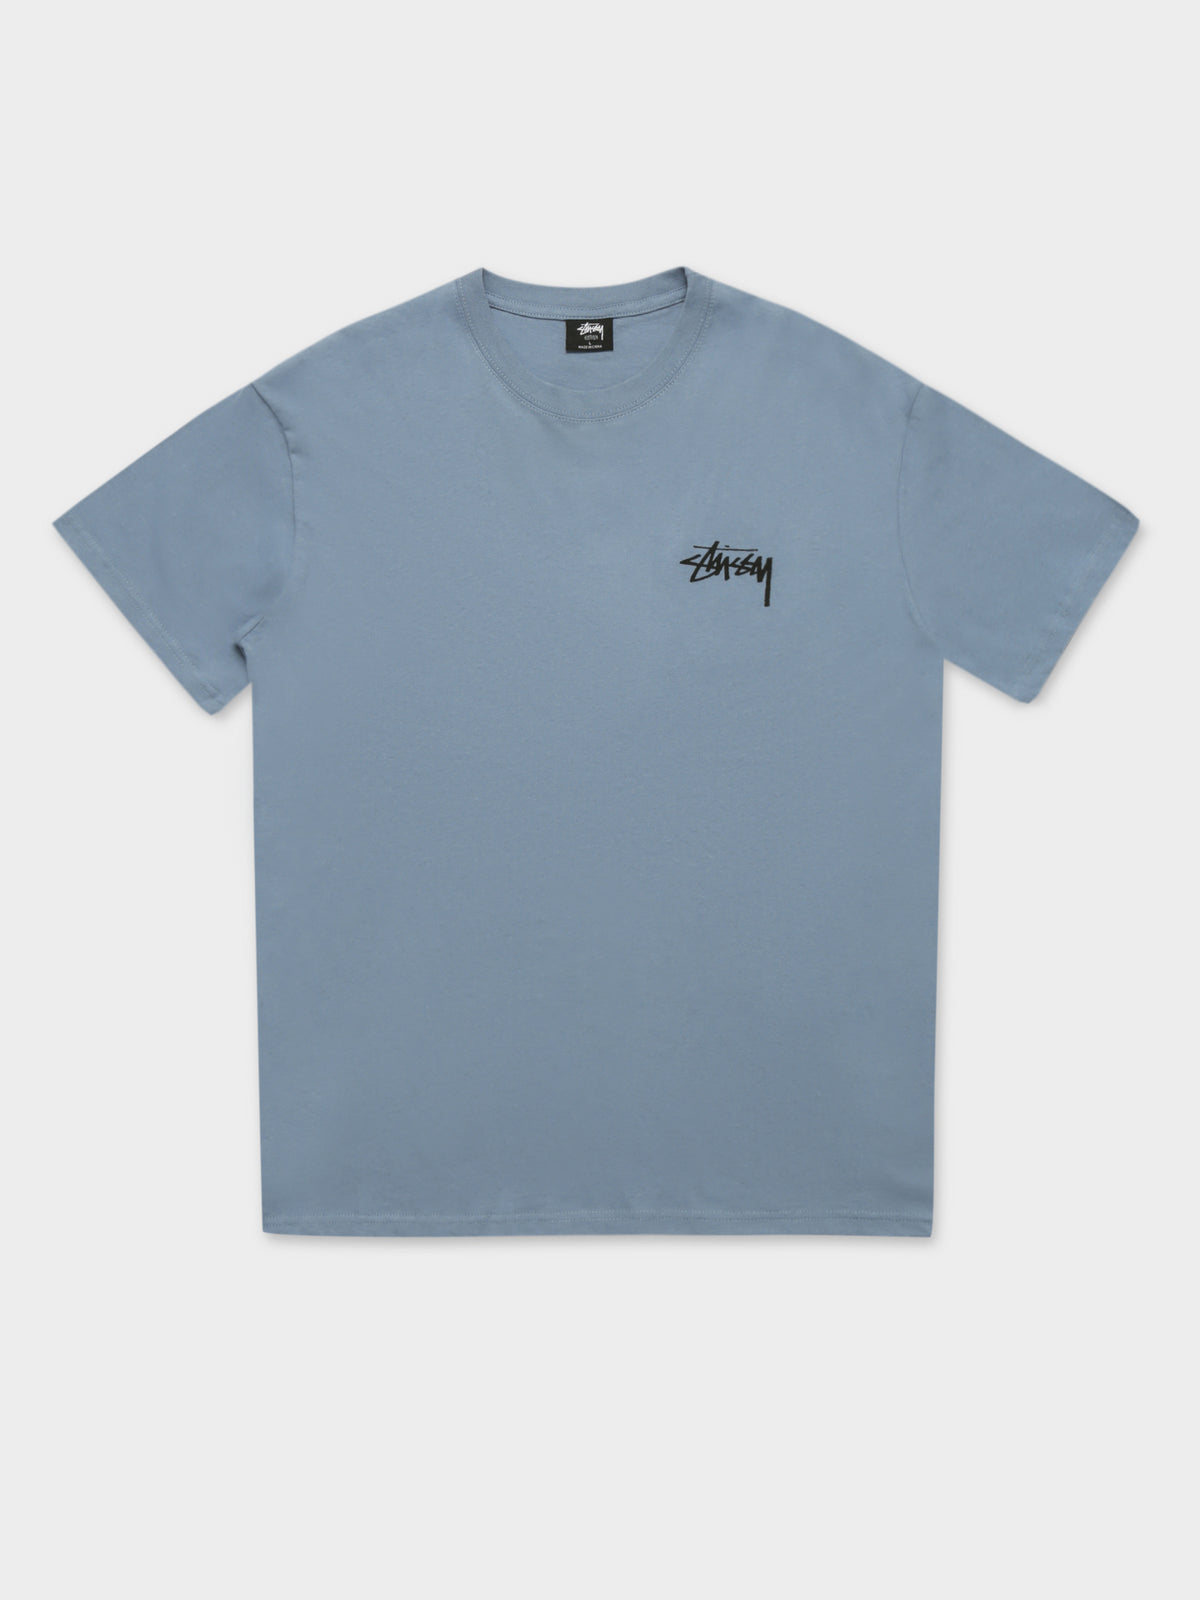 Say It Loud Short Sleeve T-Shirt in Dusty Blue